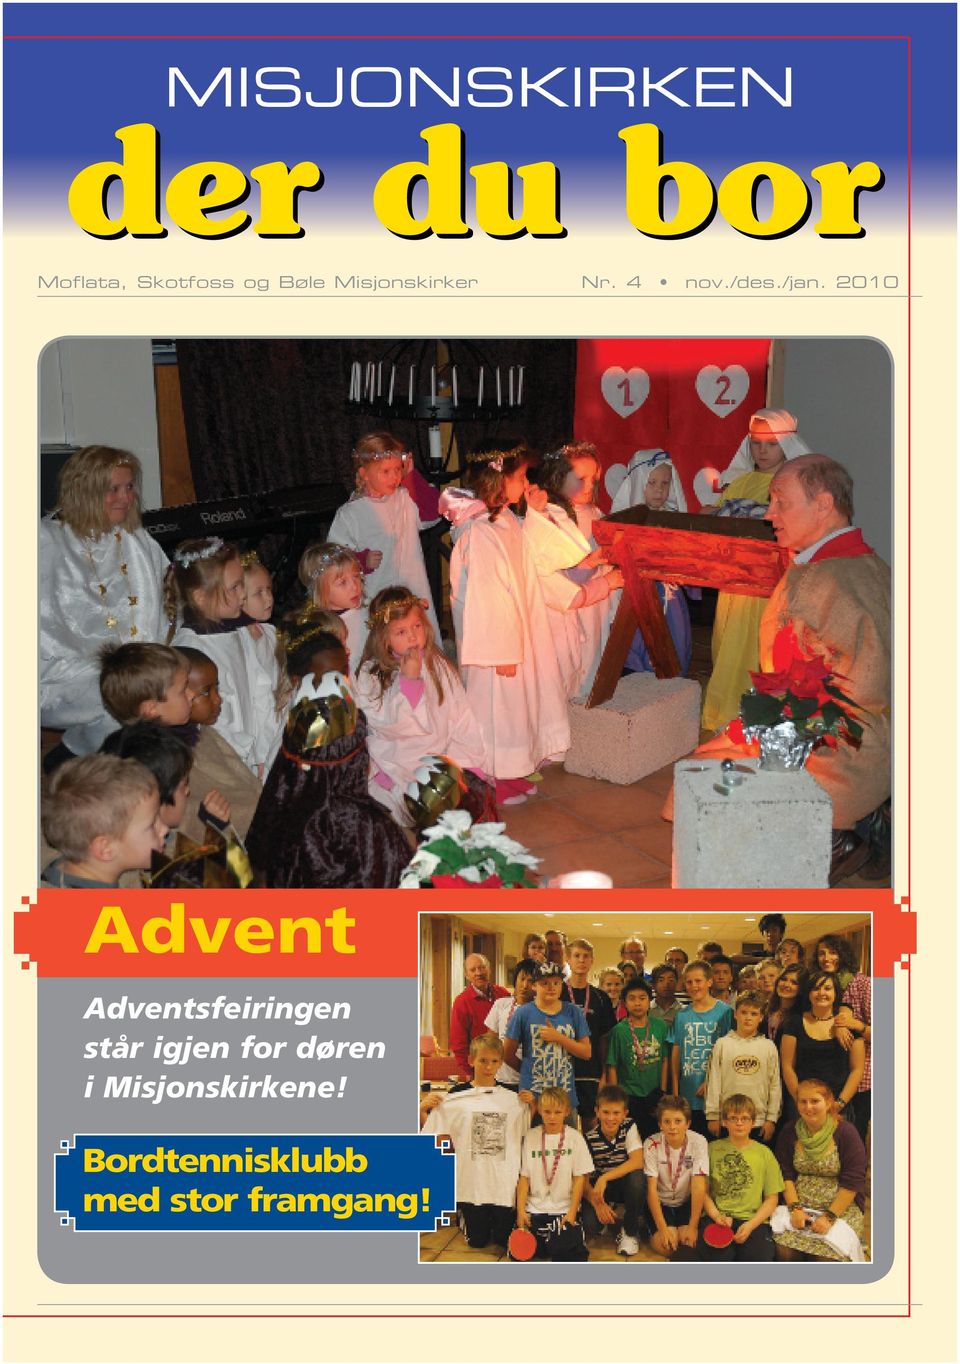 2010 Advent Adventsfeiringen står igjen